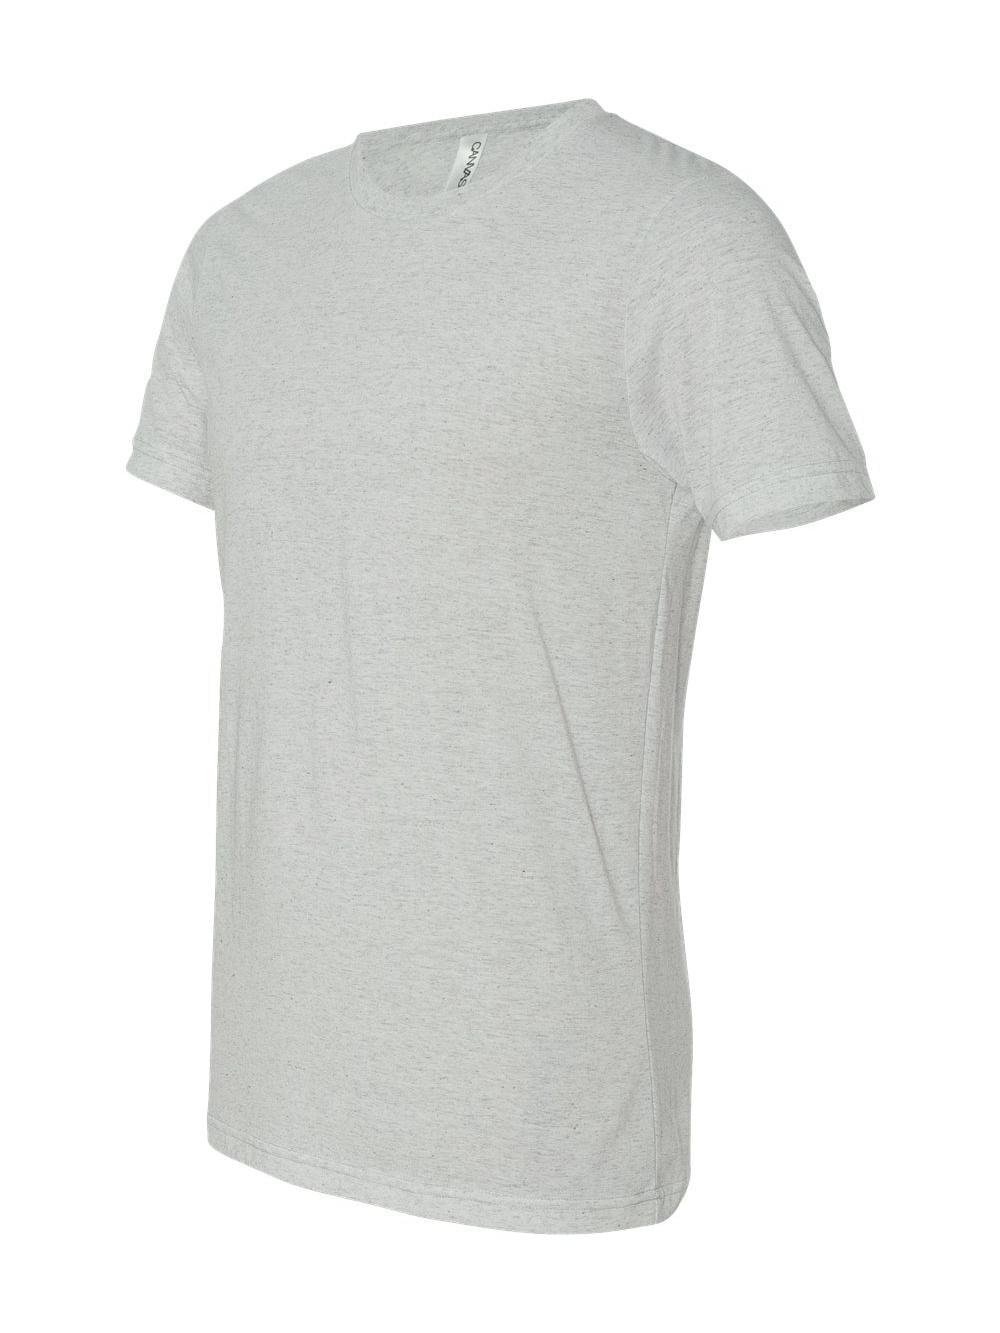 Unisex Triblend T-Shirt - OATMEAL TRIBLEND - 2XL